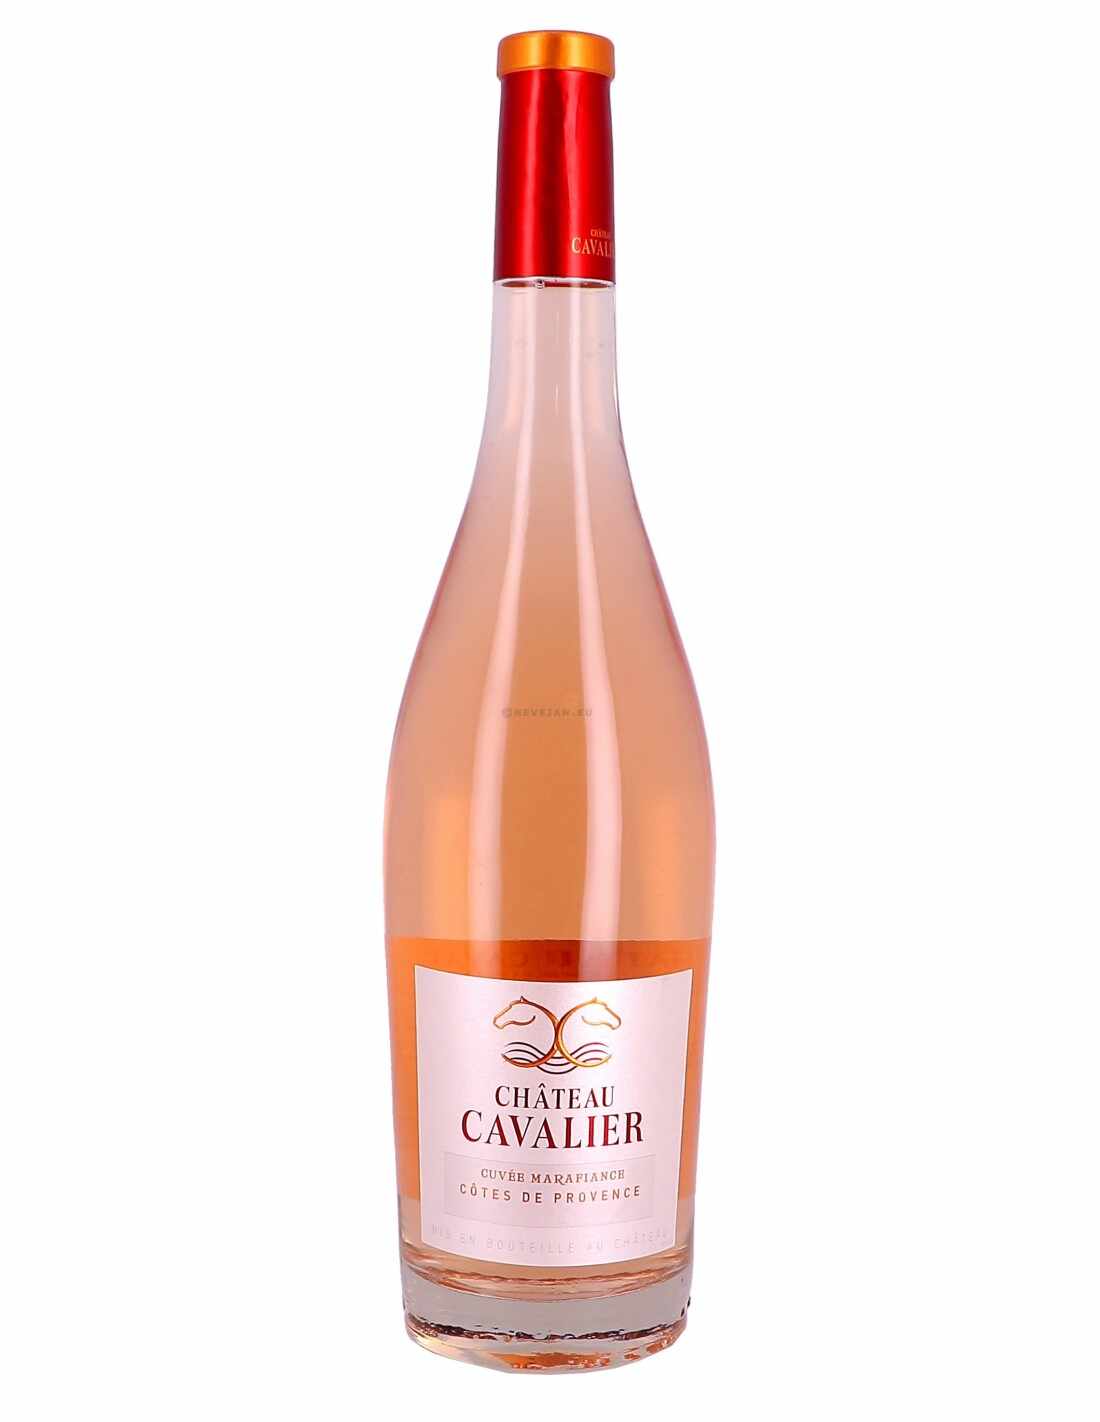 Vin roze sec, Chateau Cavalier Cuv茅e Marafiance, C么tes de Provence, 1.5L, 12.5% alc., Franta